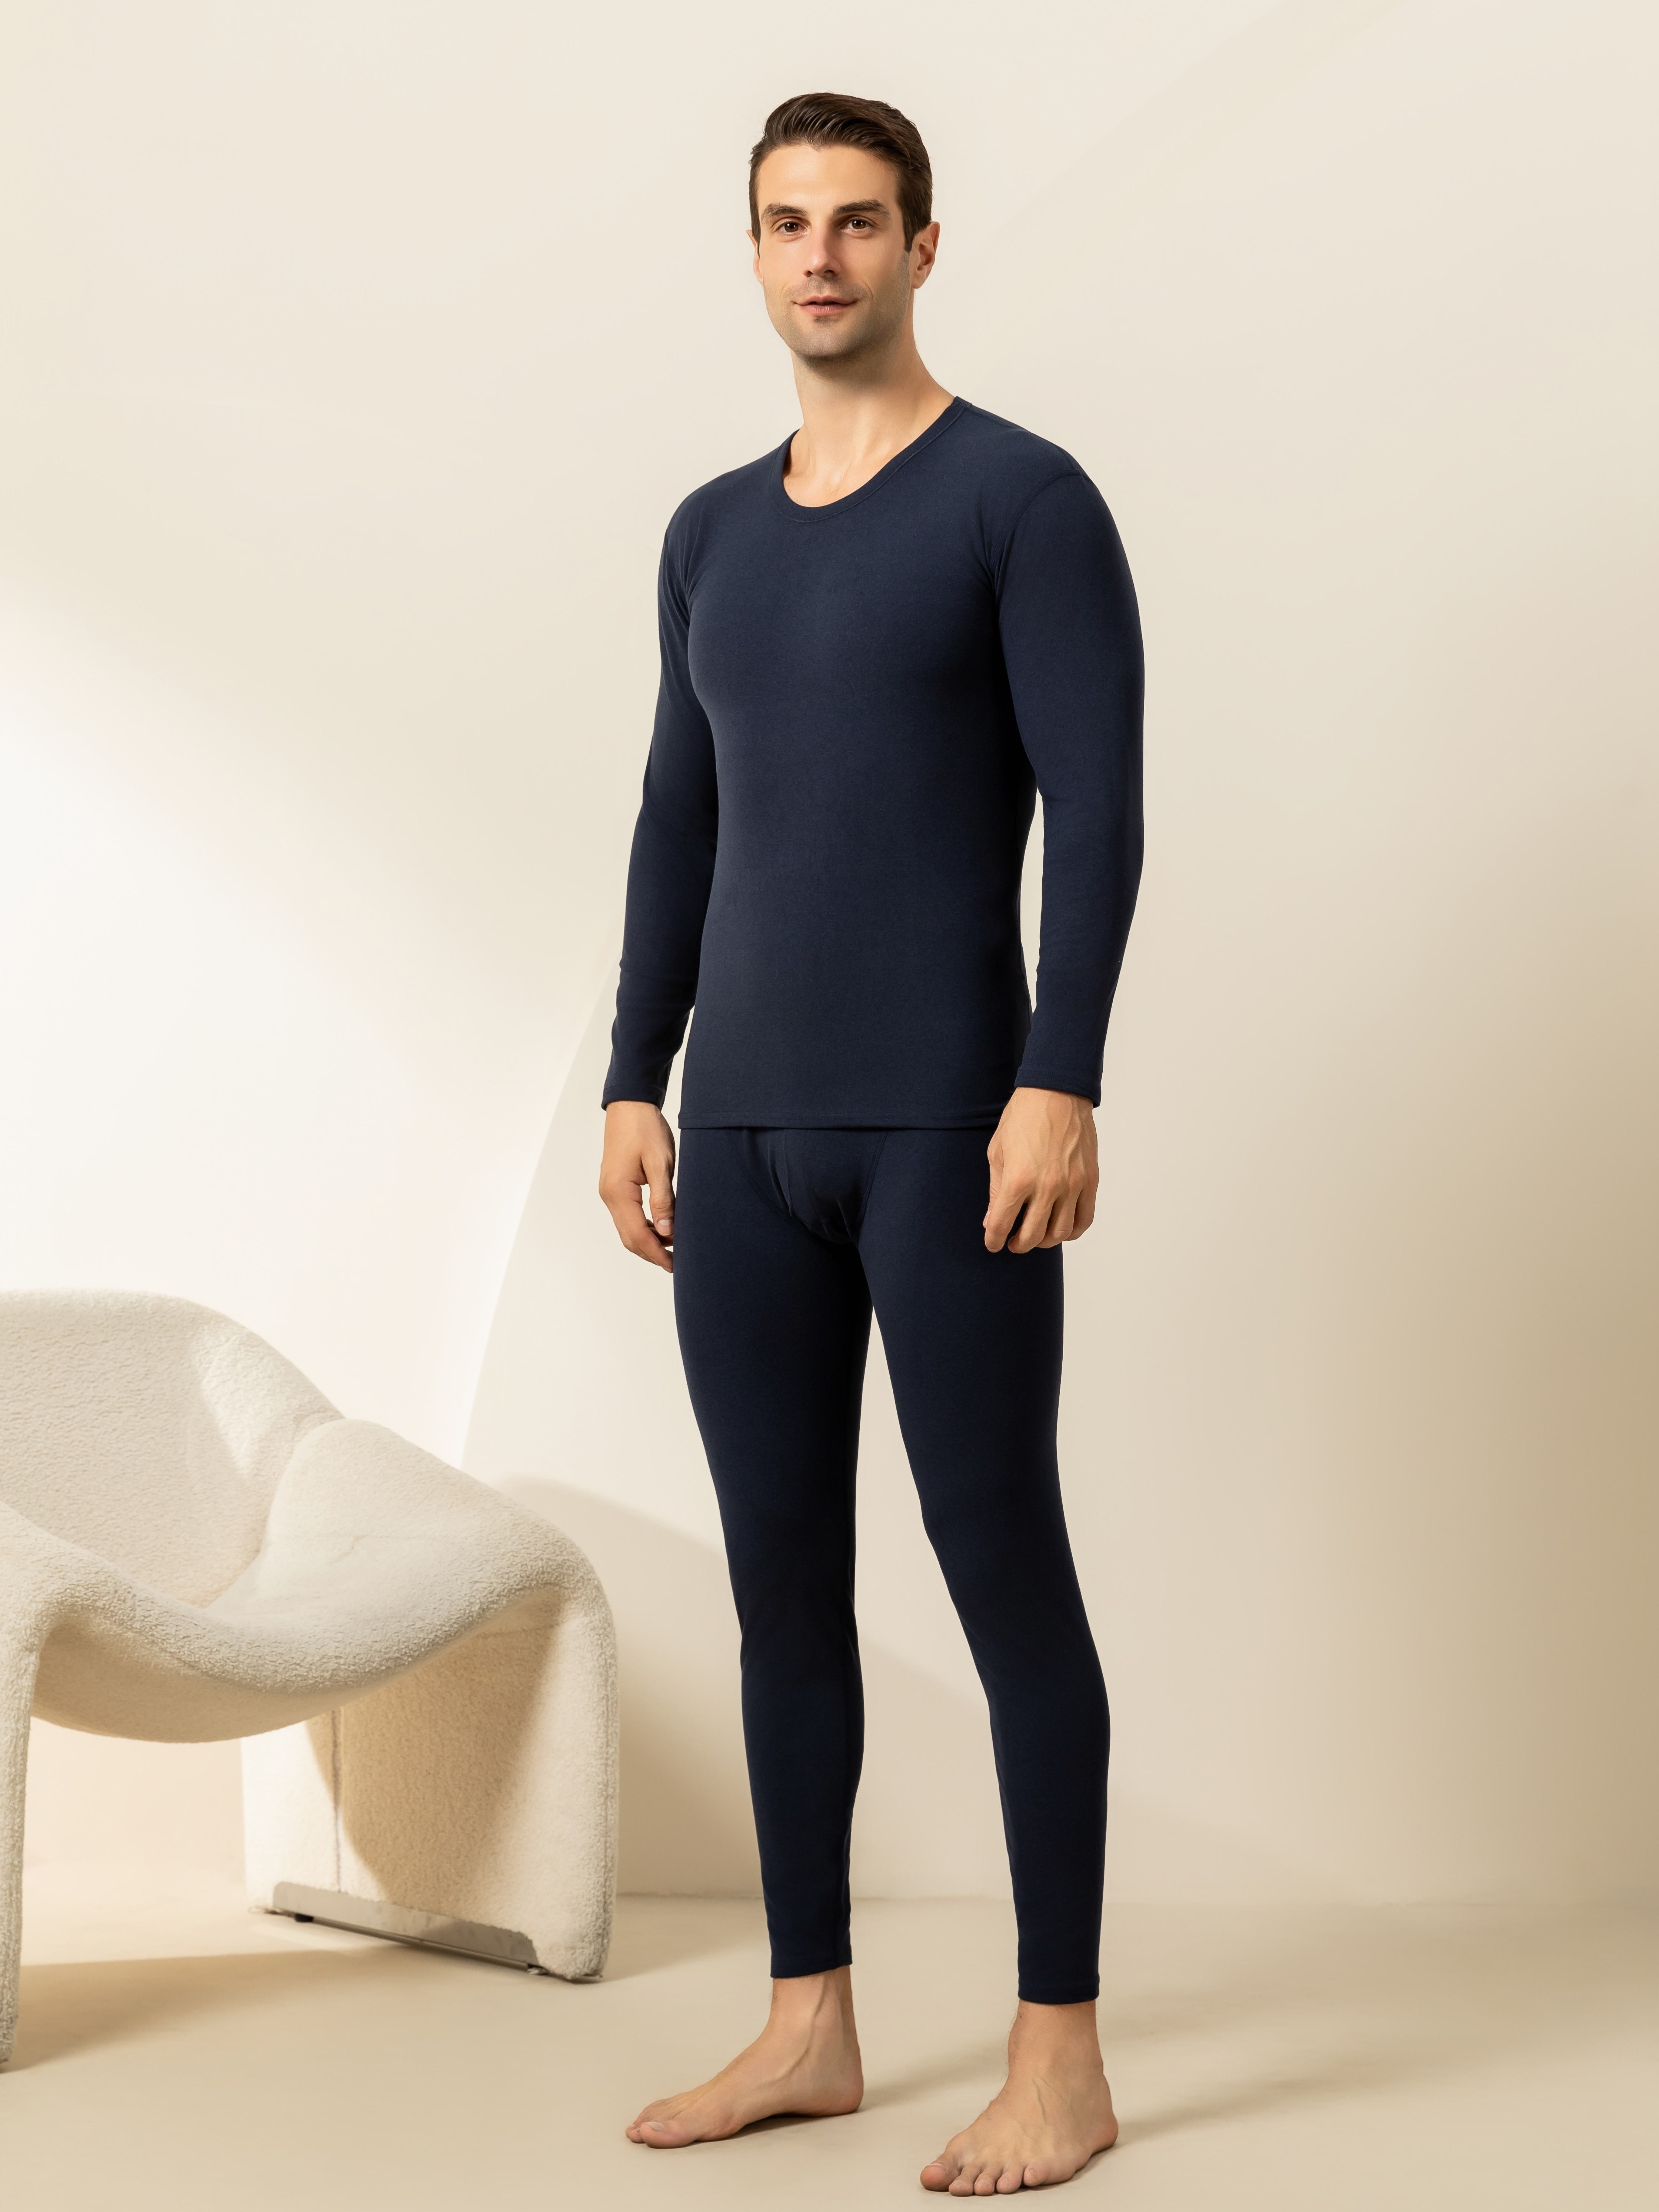 Pantalon Sous-vêtement Thermique Homme Mince, Fonds Chauds De